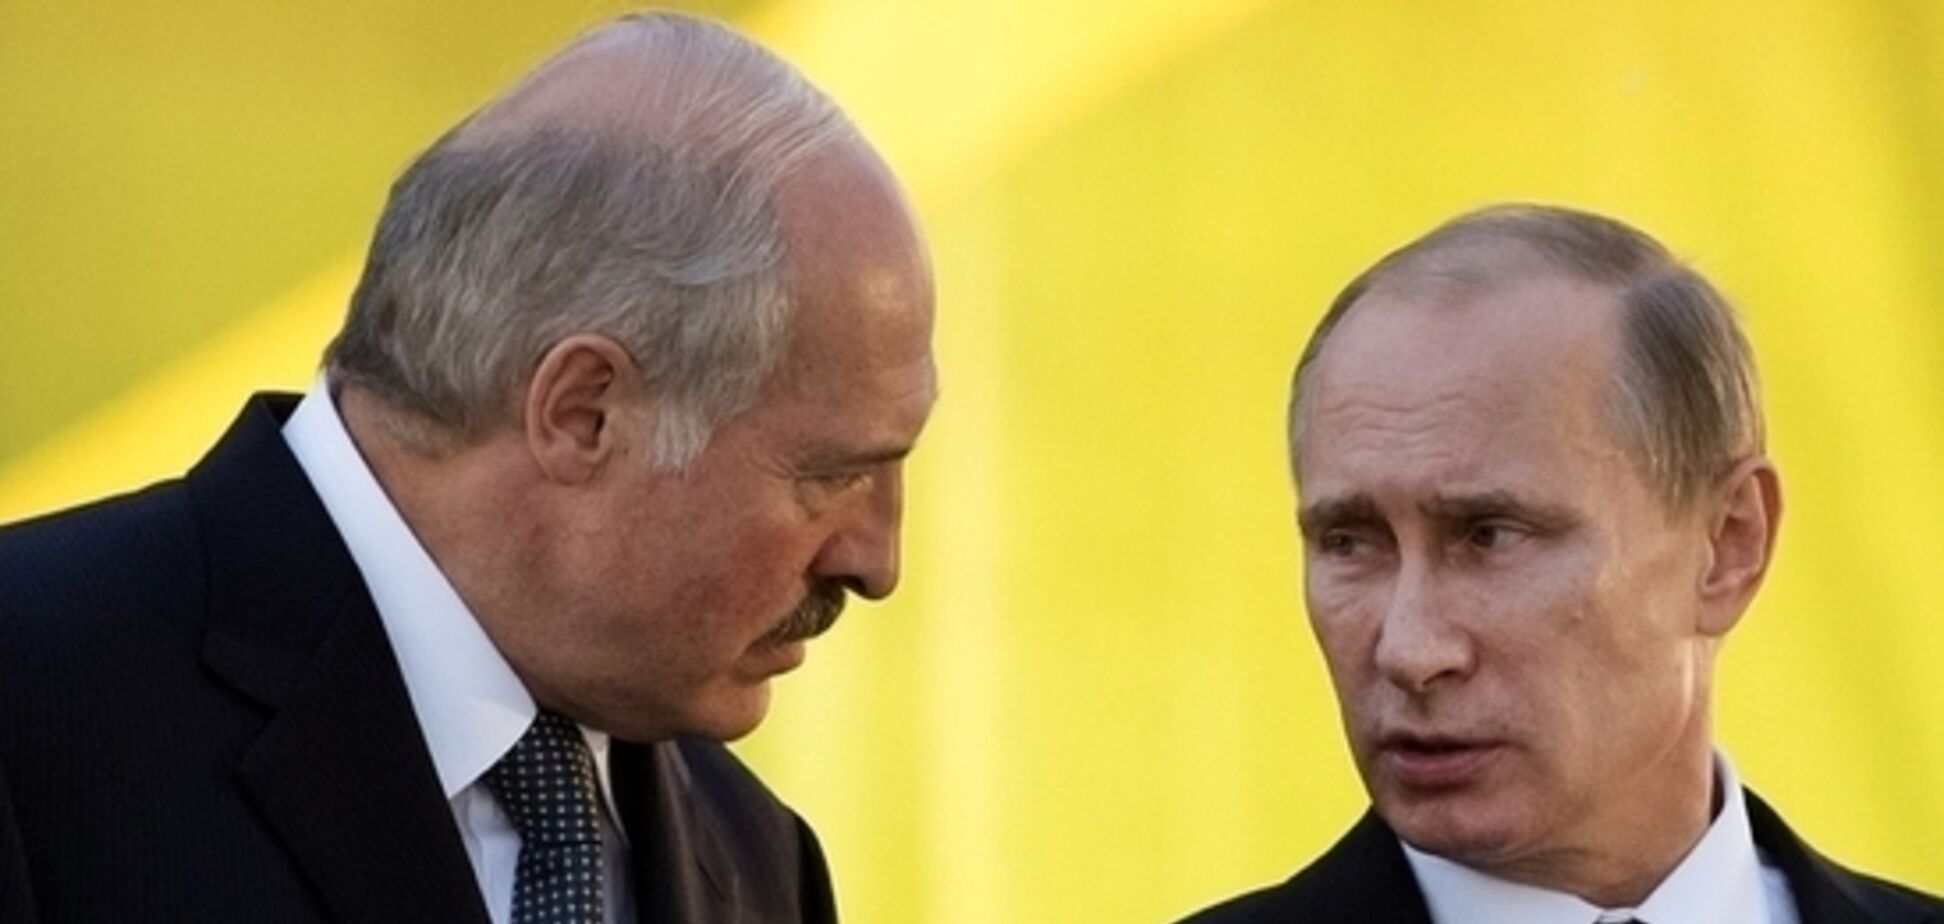  Лукашенко — не Медведев: коварному плану Путина предрекли провал